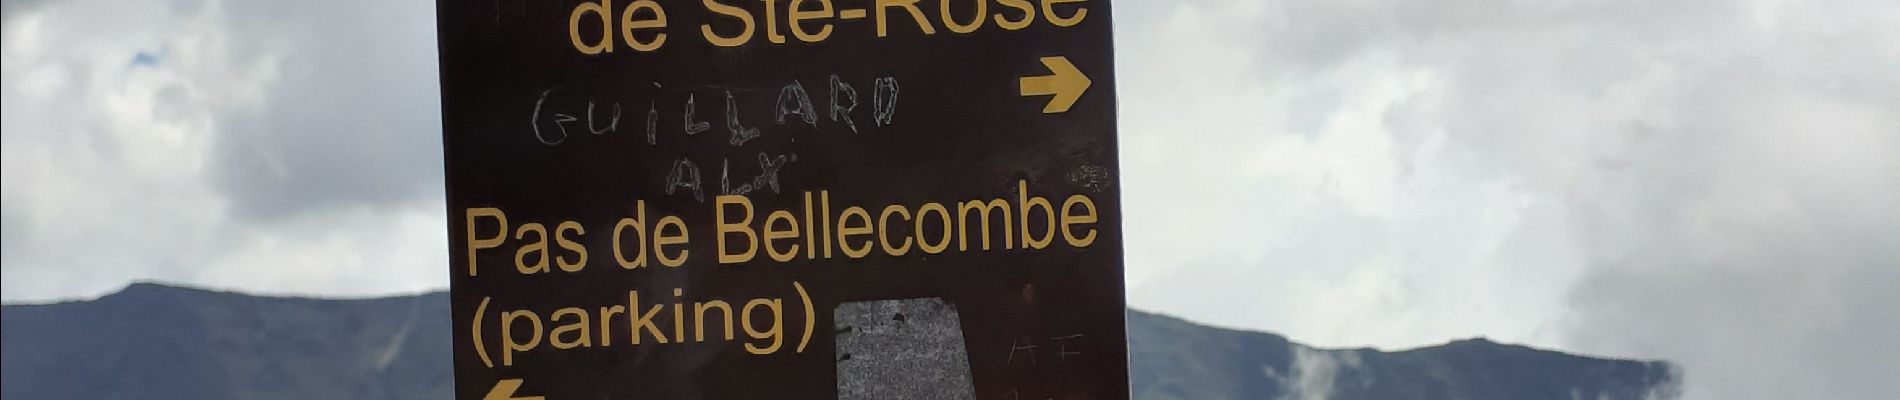 Randonnée Marche Sainte-Rose - bellecombe dolomieu - Photo